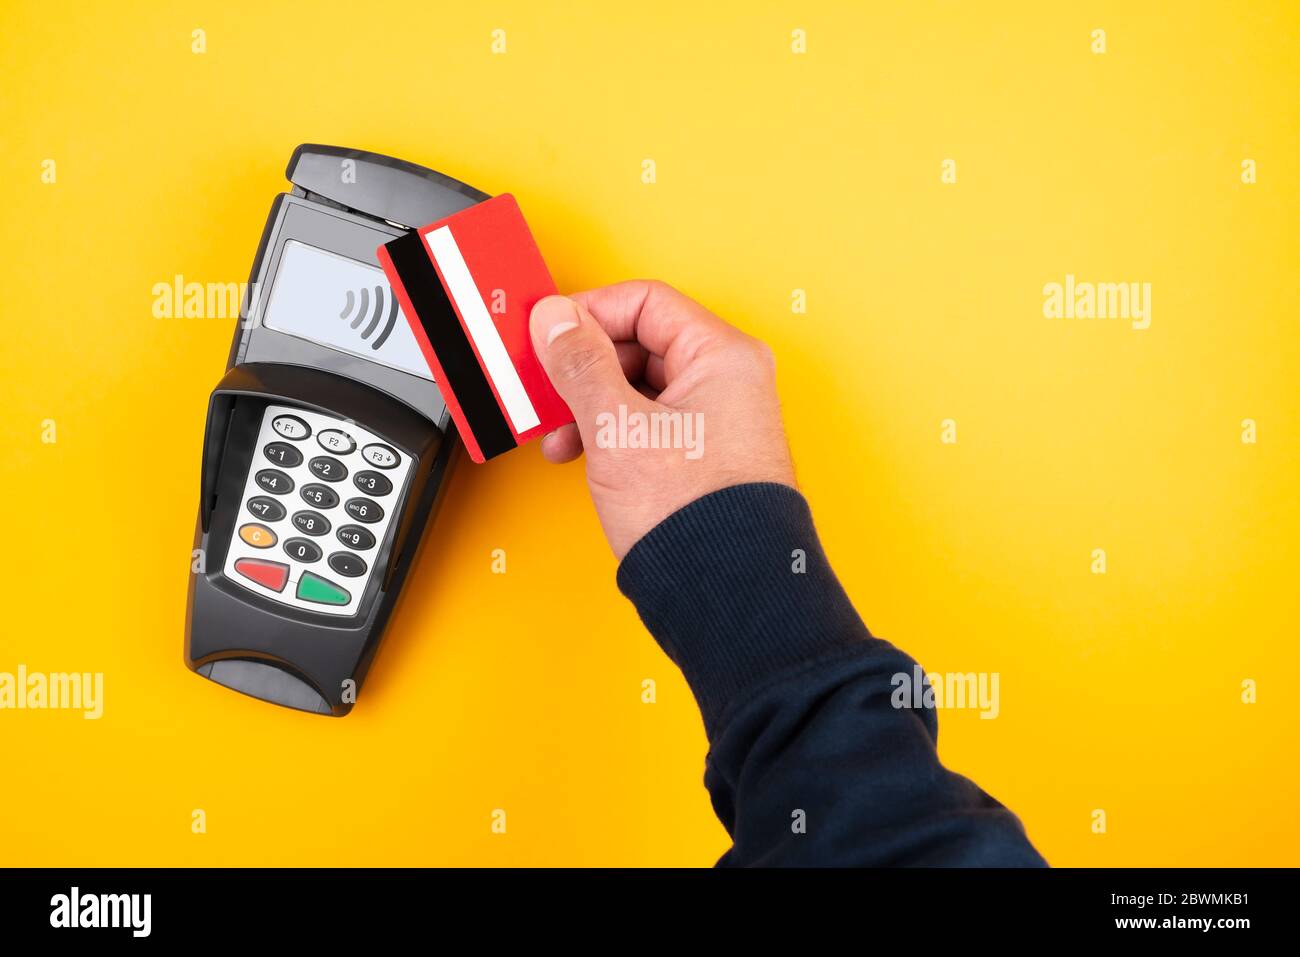 Kontaktloses Bezahlkonzept, direkt über Ansicht der Person, die Kreditkarte oder Debitkarte gegen POS-Zahlungsterminal auf orangefarbenem Hintergrund hält Stockfoto